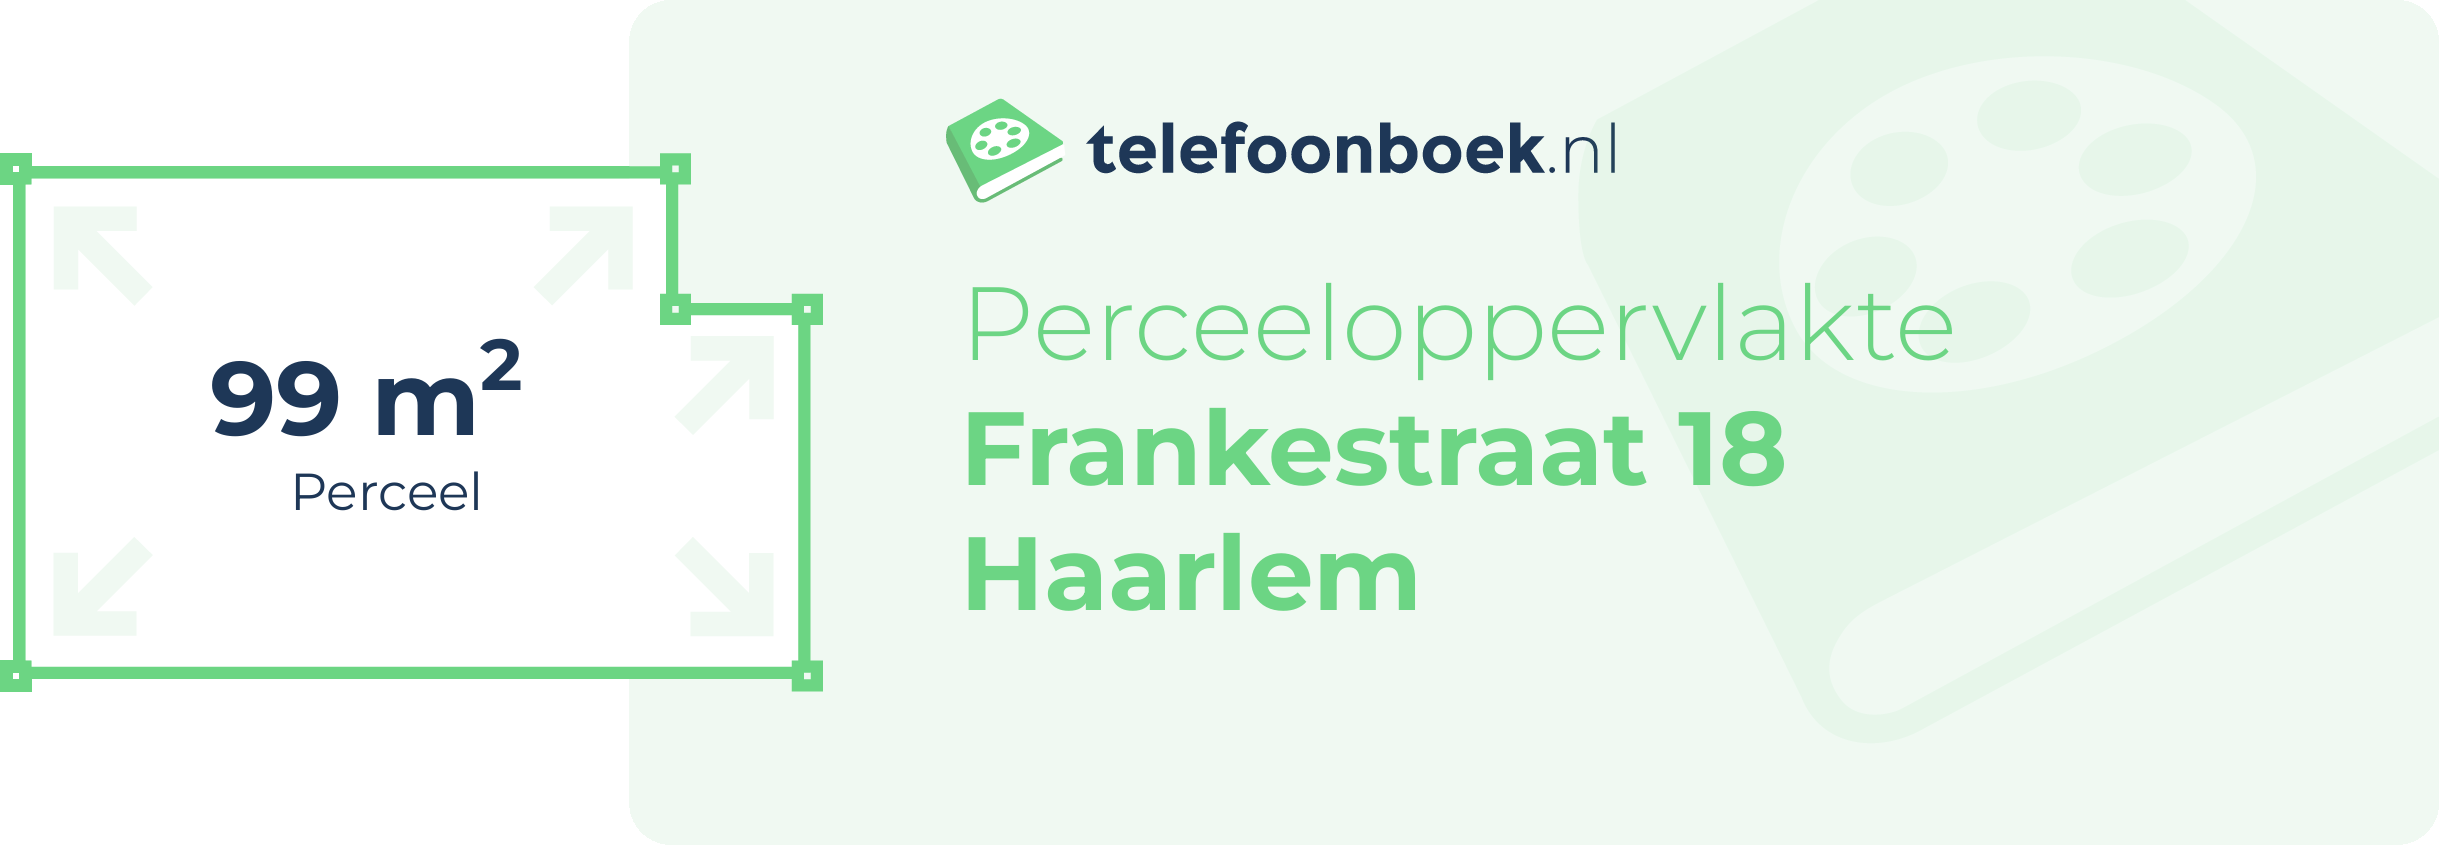 Perceeloppervlakte Frankestraat 18 Haarlem